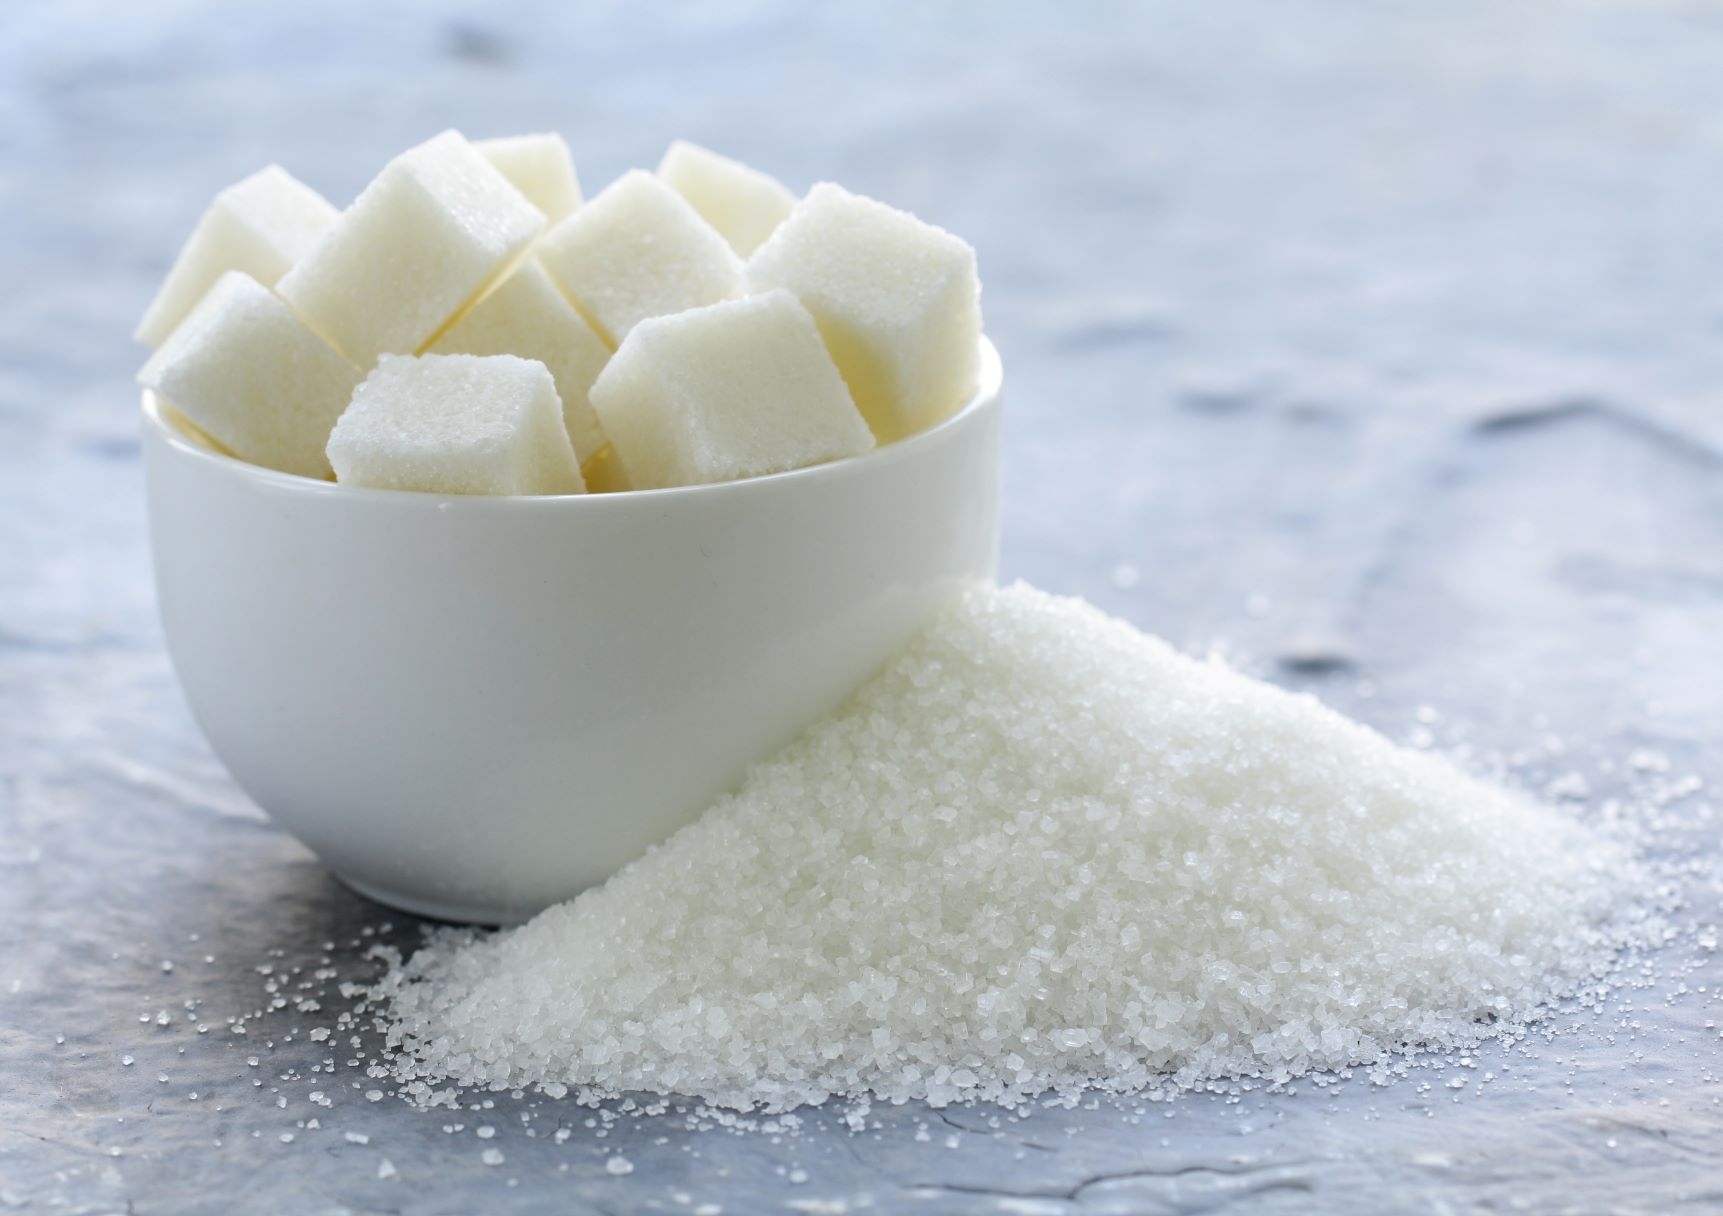 Cukraus kainos tarptautinėje rinkoje įsitvirtino daugiau nei dešimtmečio aukštumose